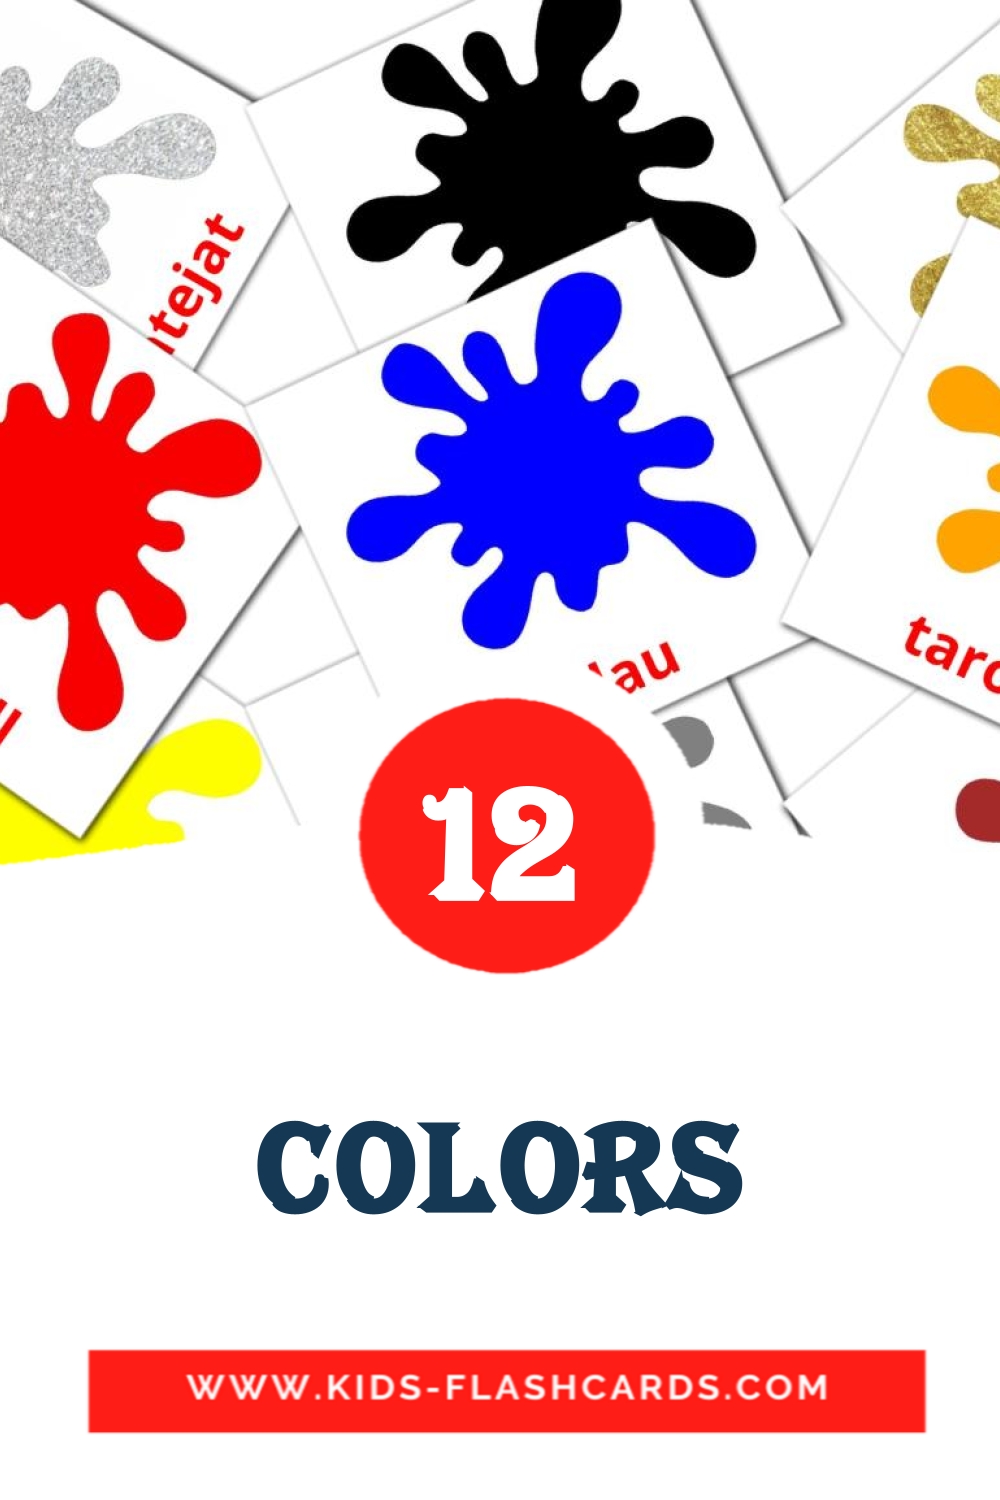 12 Cartões com Imagens de Colors para Jardim de Infância em catalão